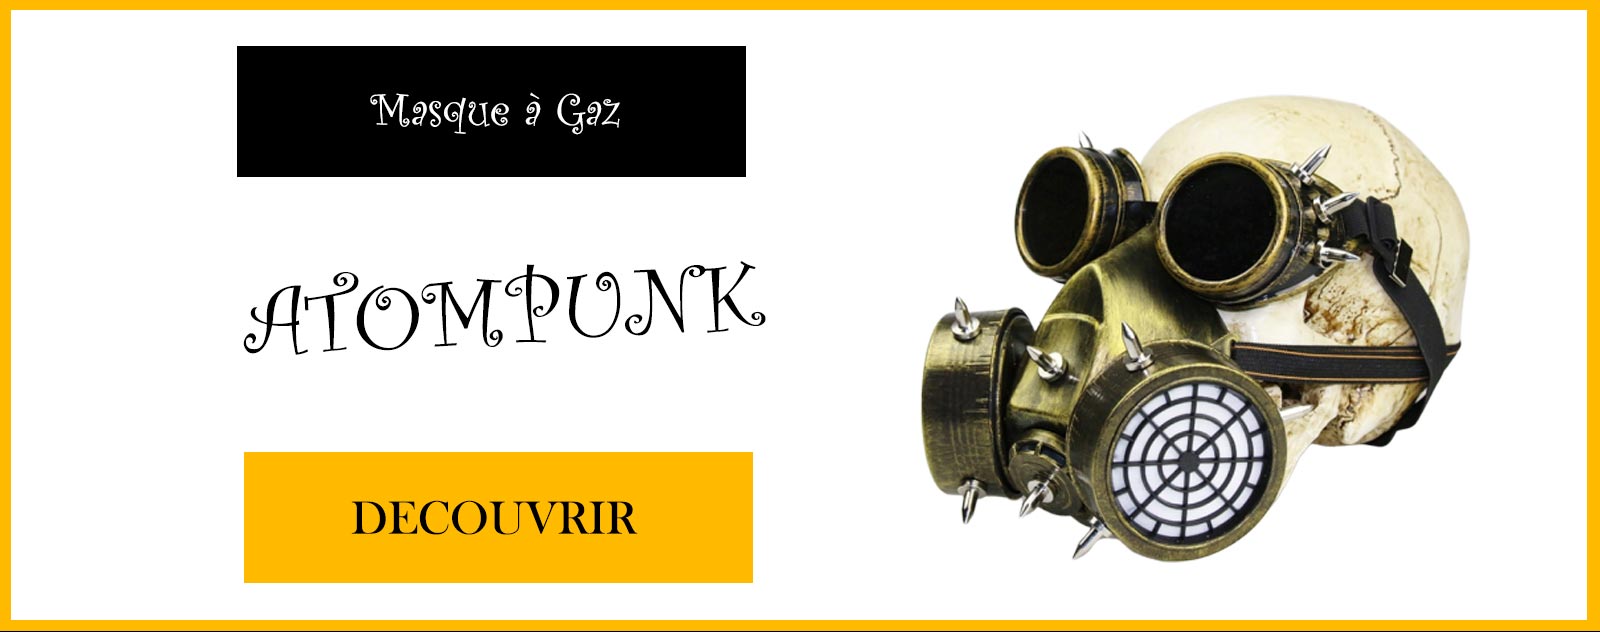 Voir le Masque steampunk Atompunk